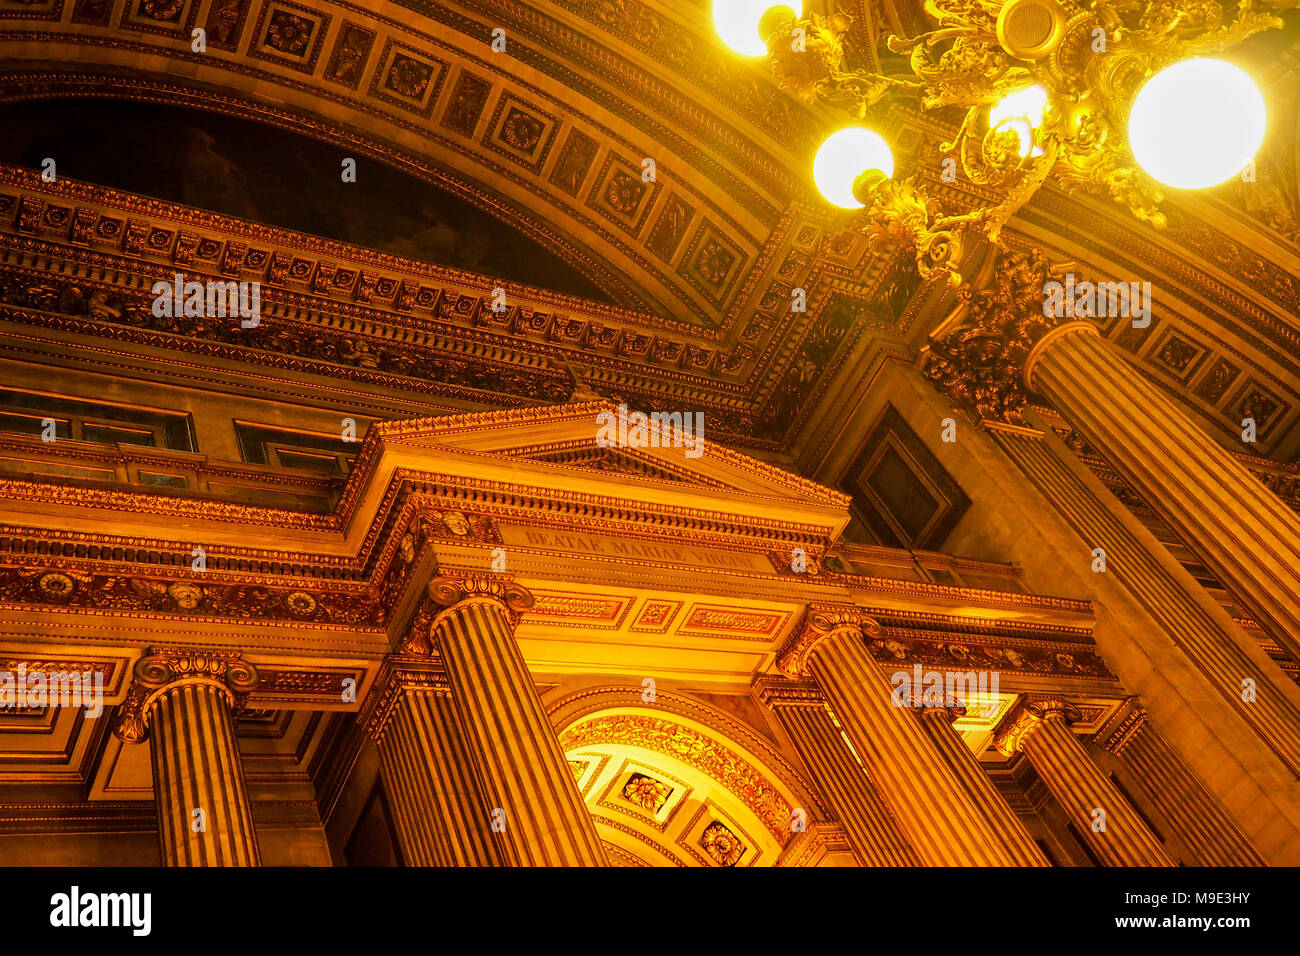 Interno della chiesa della Madeleine a Parigi con timpani dorati, colonne ioniche e dettagli architettonici Foto Stock